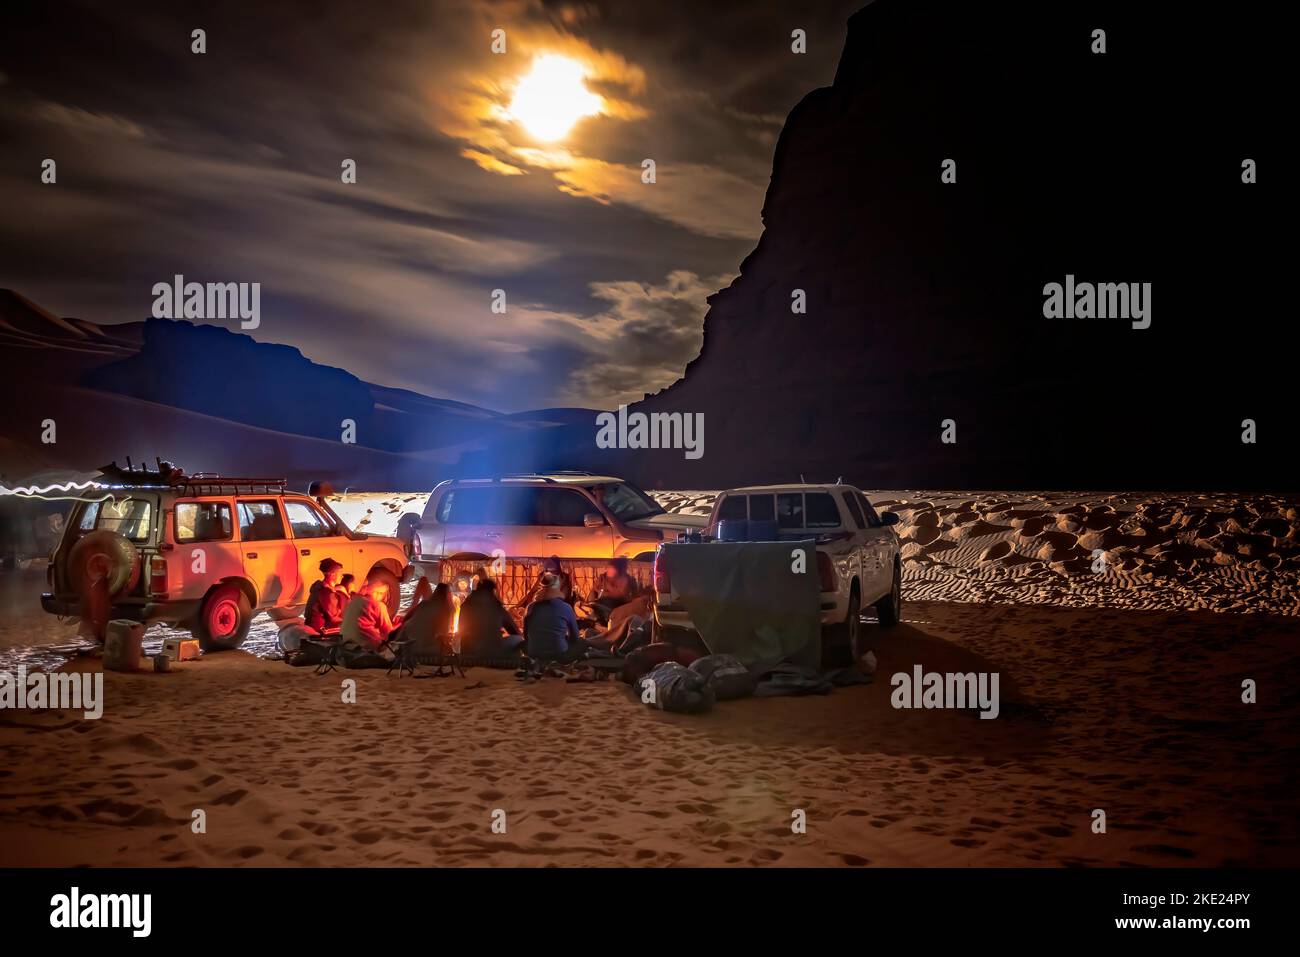 Camping groupe dans le désert du Sahara par nuit. VÉHICULES 4X4 garés, touristes et berbères locaux assis autour d'un feu de camp. clair de lune ciel nuageux. Banque D'Images